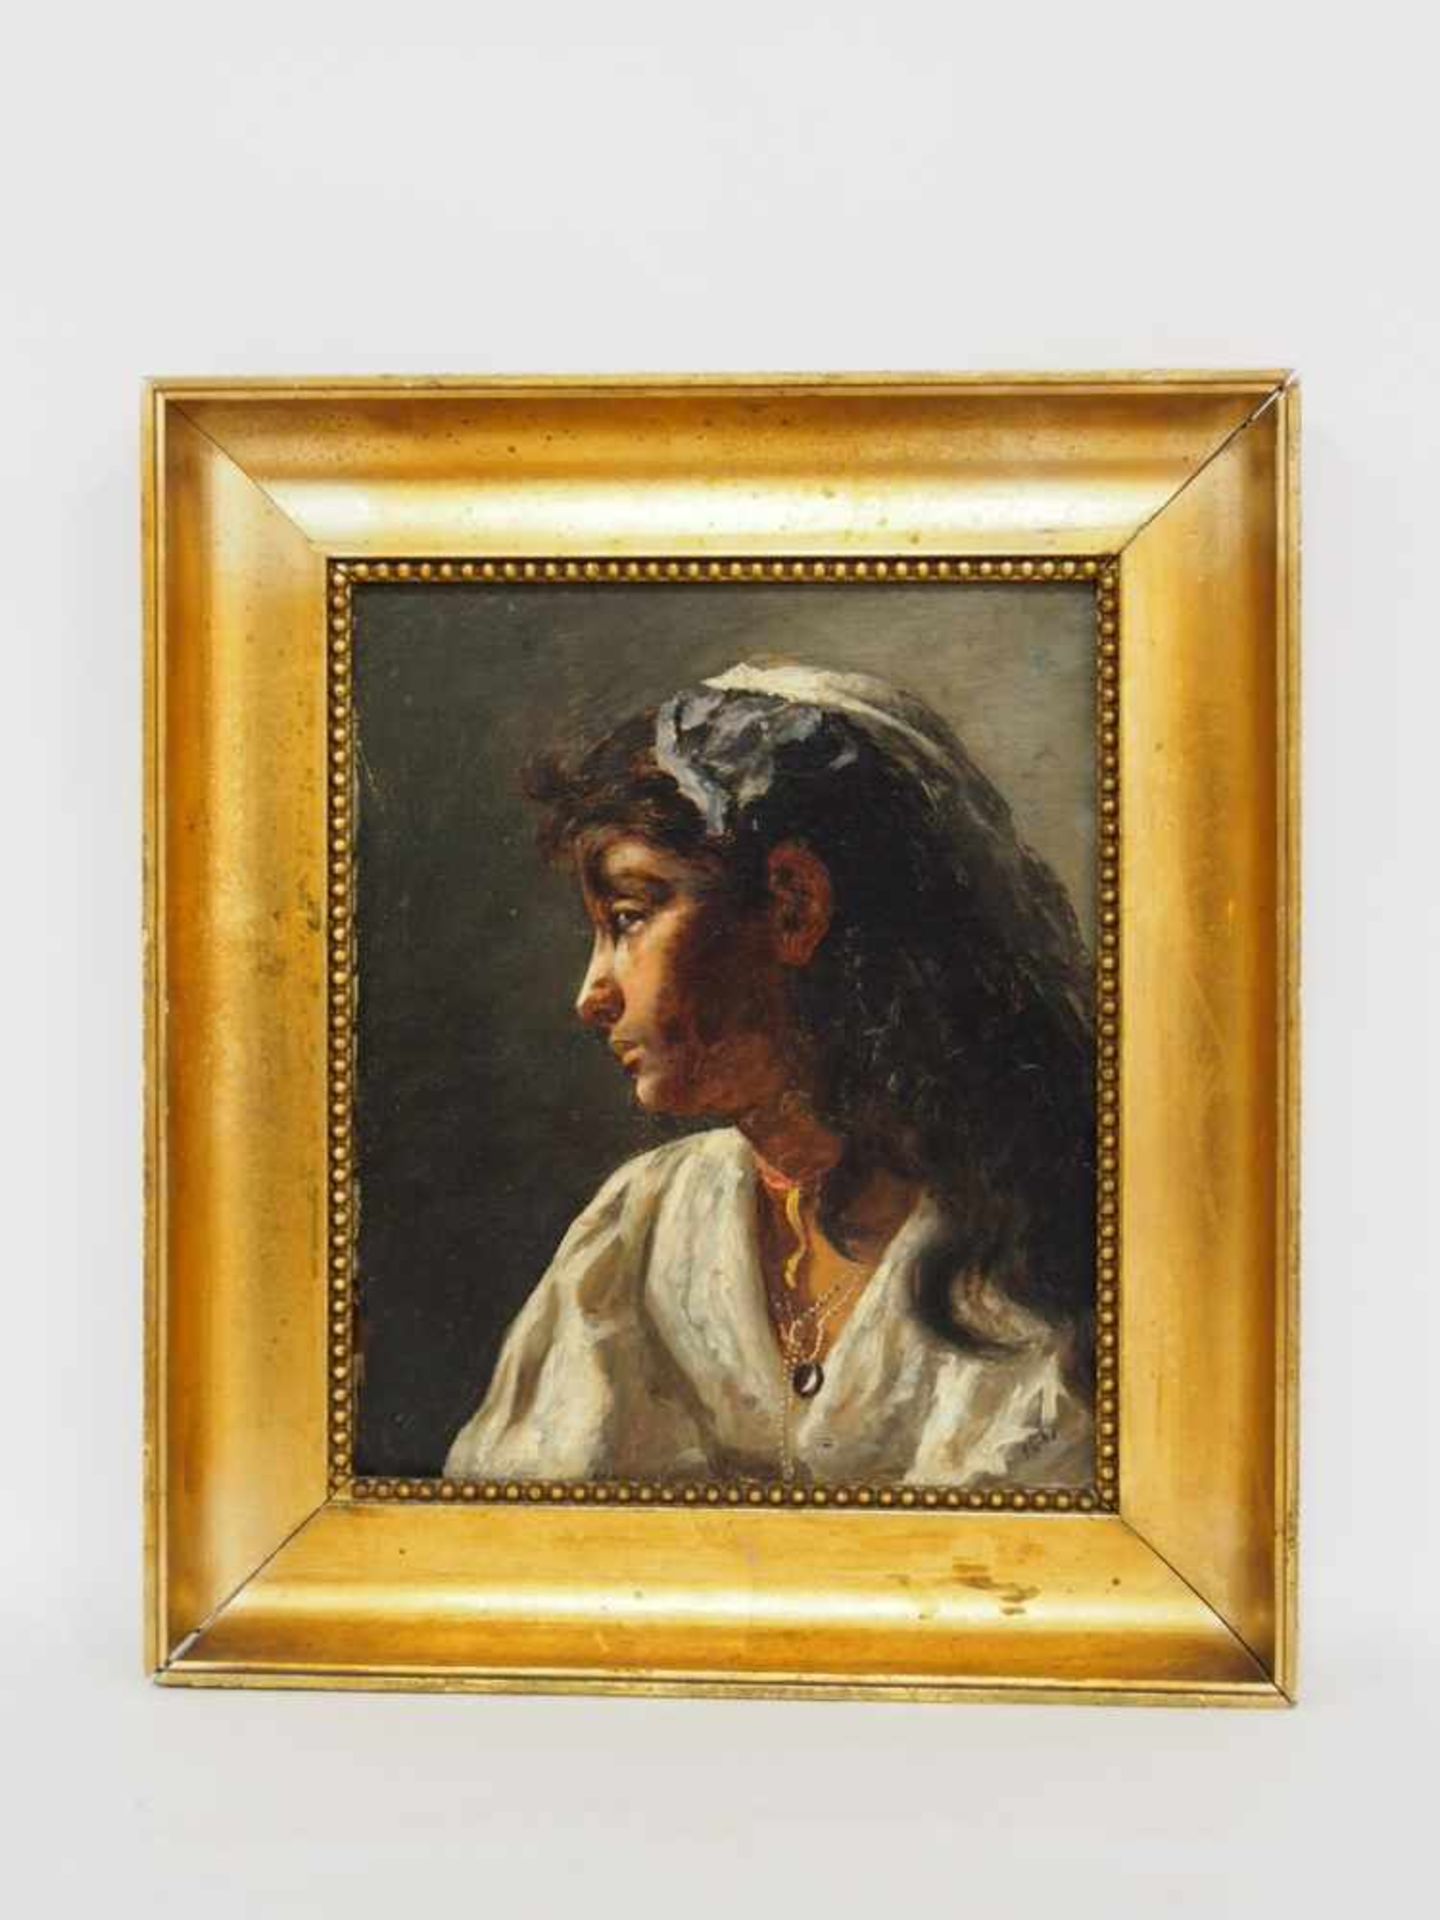 ITALIENISCHER MEISTER19. Jh.Porträt einer jungen NeapolitanerinÖl auf Leinwand, datiert 1837 unten - Bild 2 aus 2